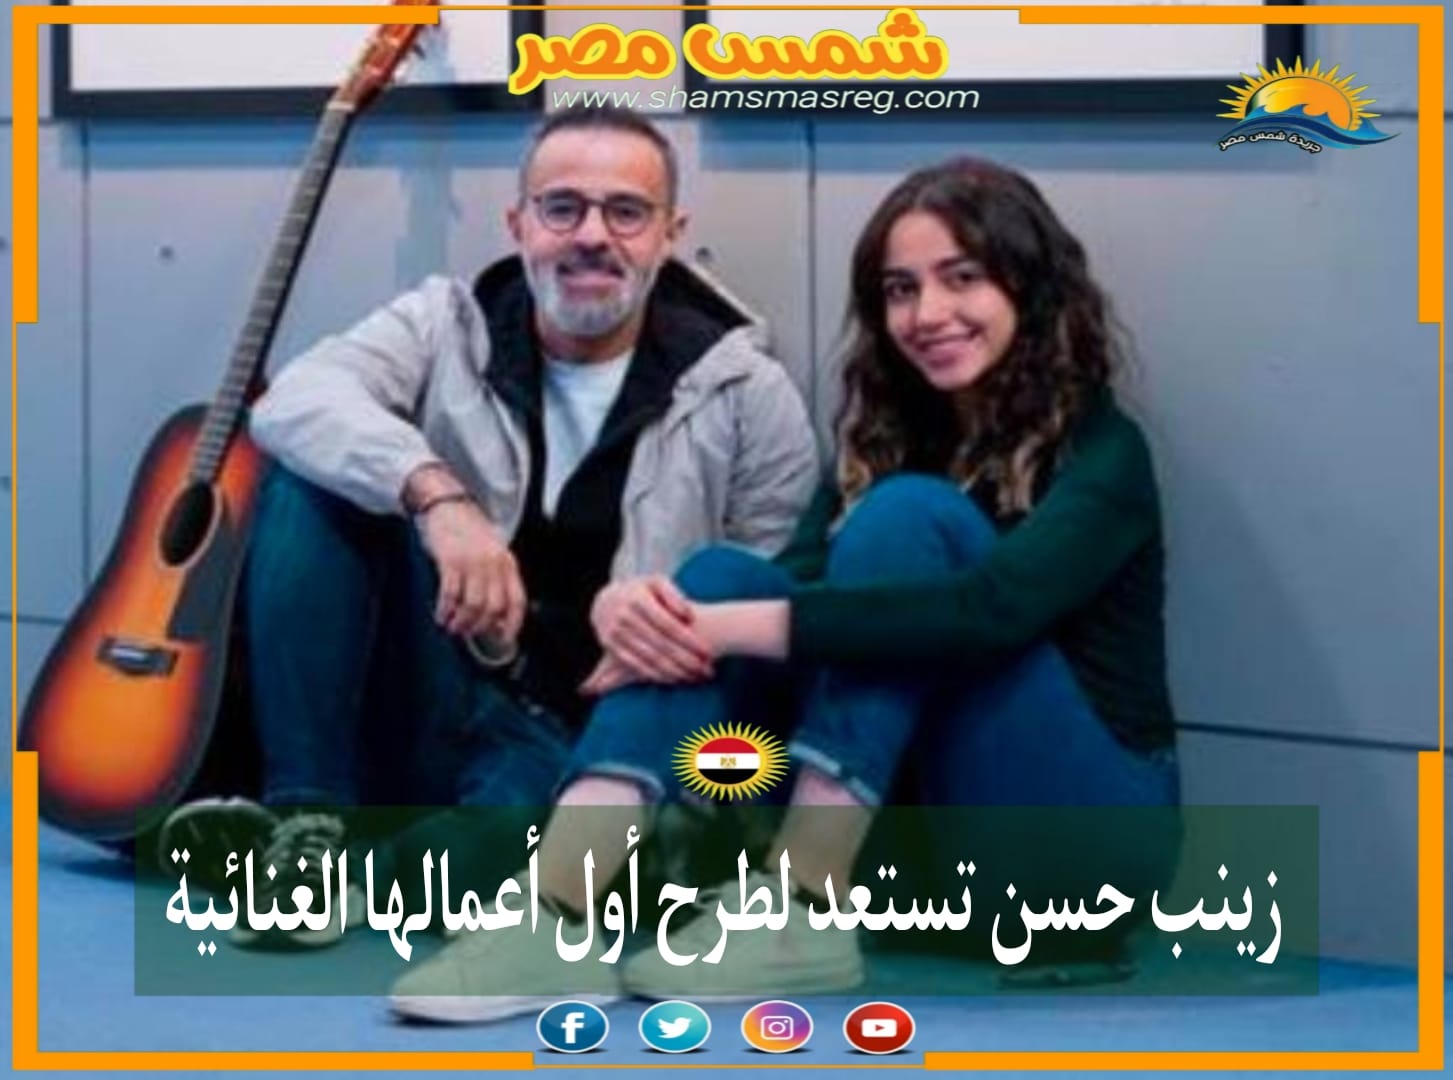 |شمس مصر|.. زينب حسن تستعد لطرح أول أعمالها الغنائية